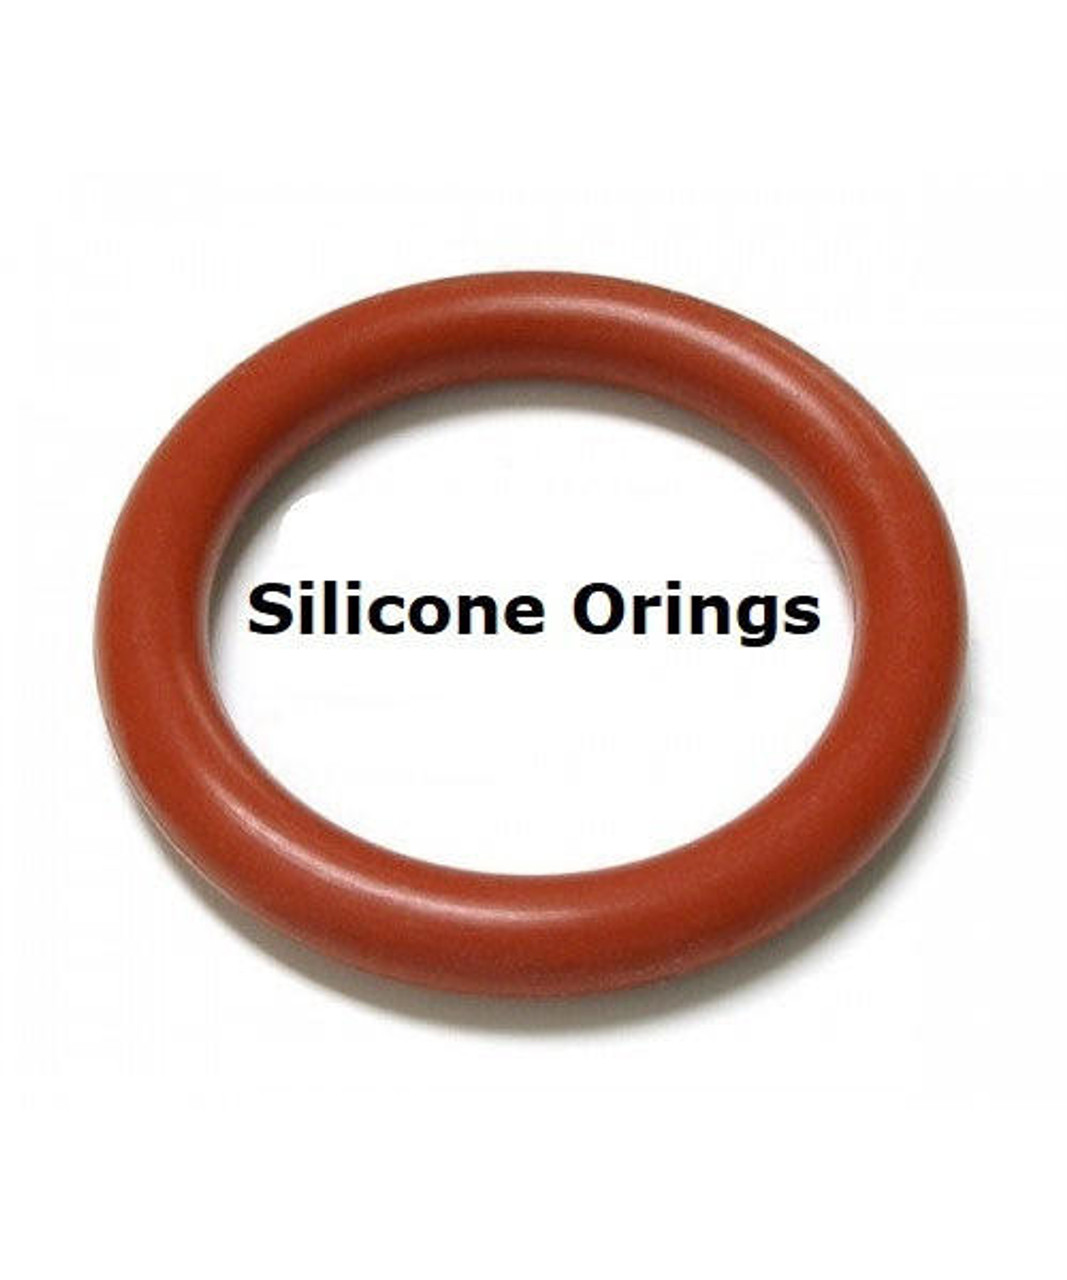 Silicone O-rings Size 130   Minimum 10 pcs